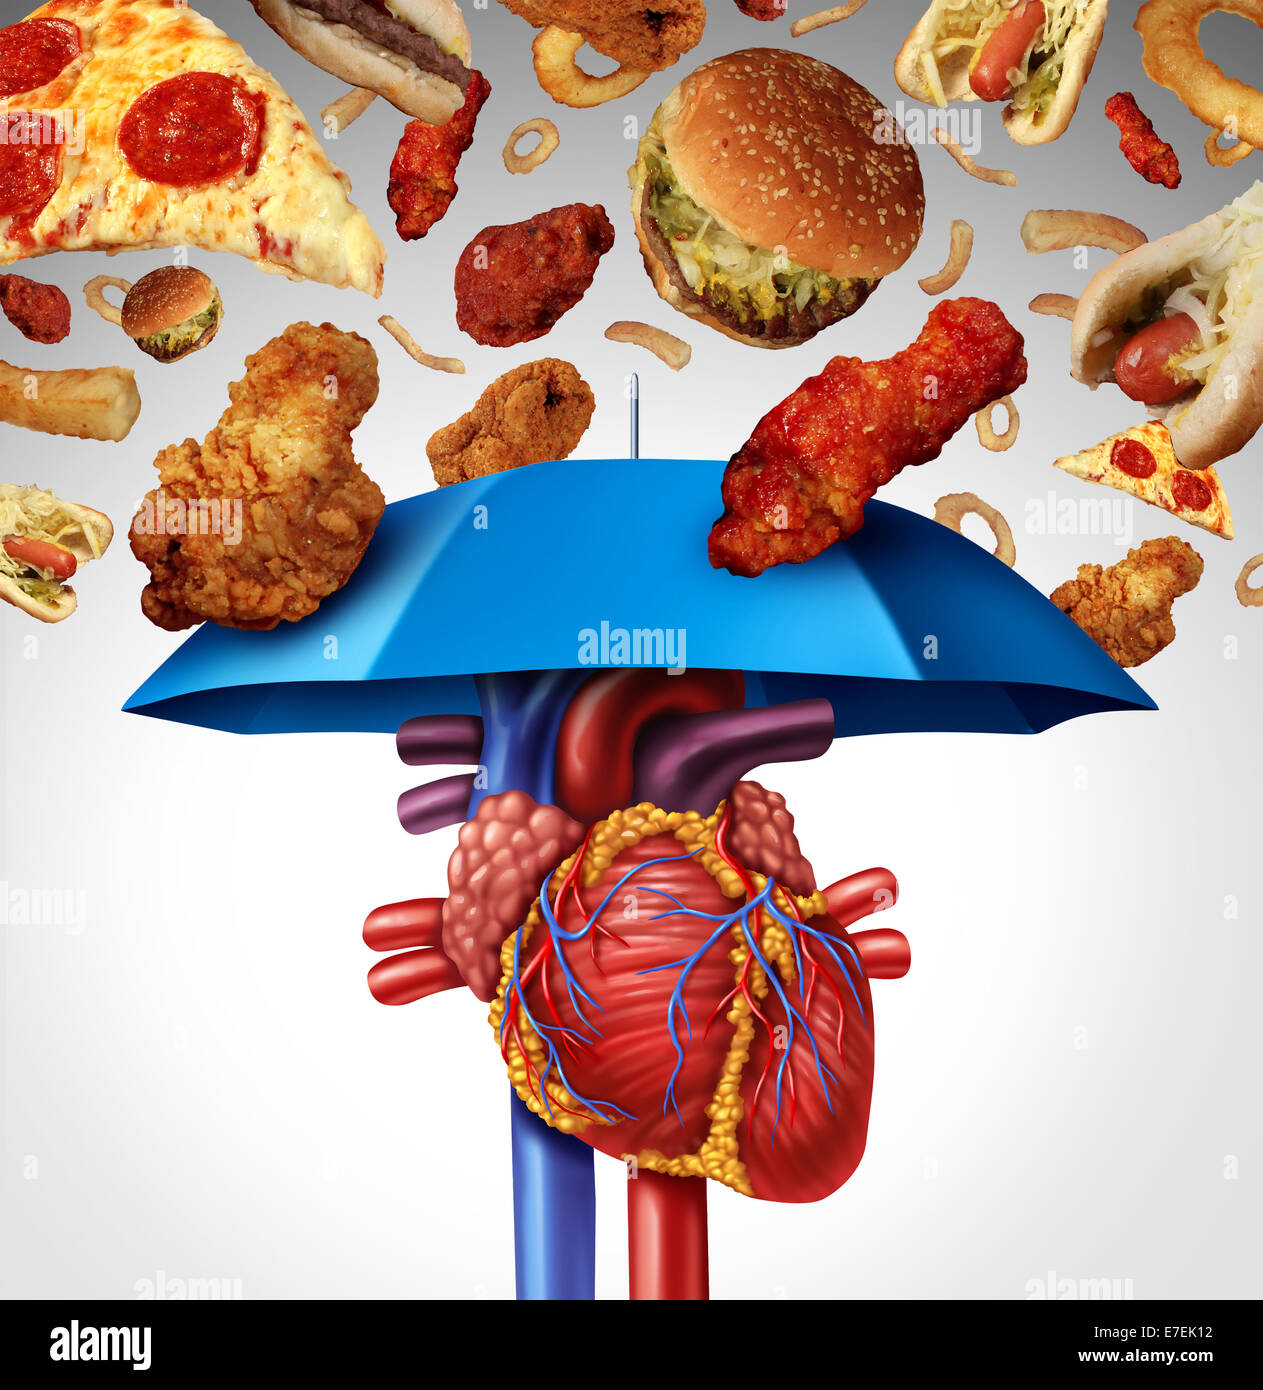 Herz Schutz medizinisches Konzept als Symbol eine verstopfte Arterie und  Atherosklerose Krankheit als eine blaue Regenschirm schützt das Herz-Kreislauf-Organ  vor ungesunde Lebensmittel, Plaque-Bildung zu stoppen zu vermeiden  Stockfotografie - Alamy